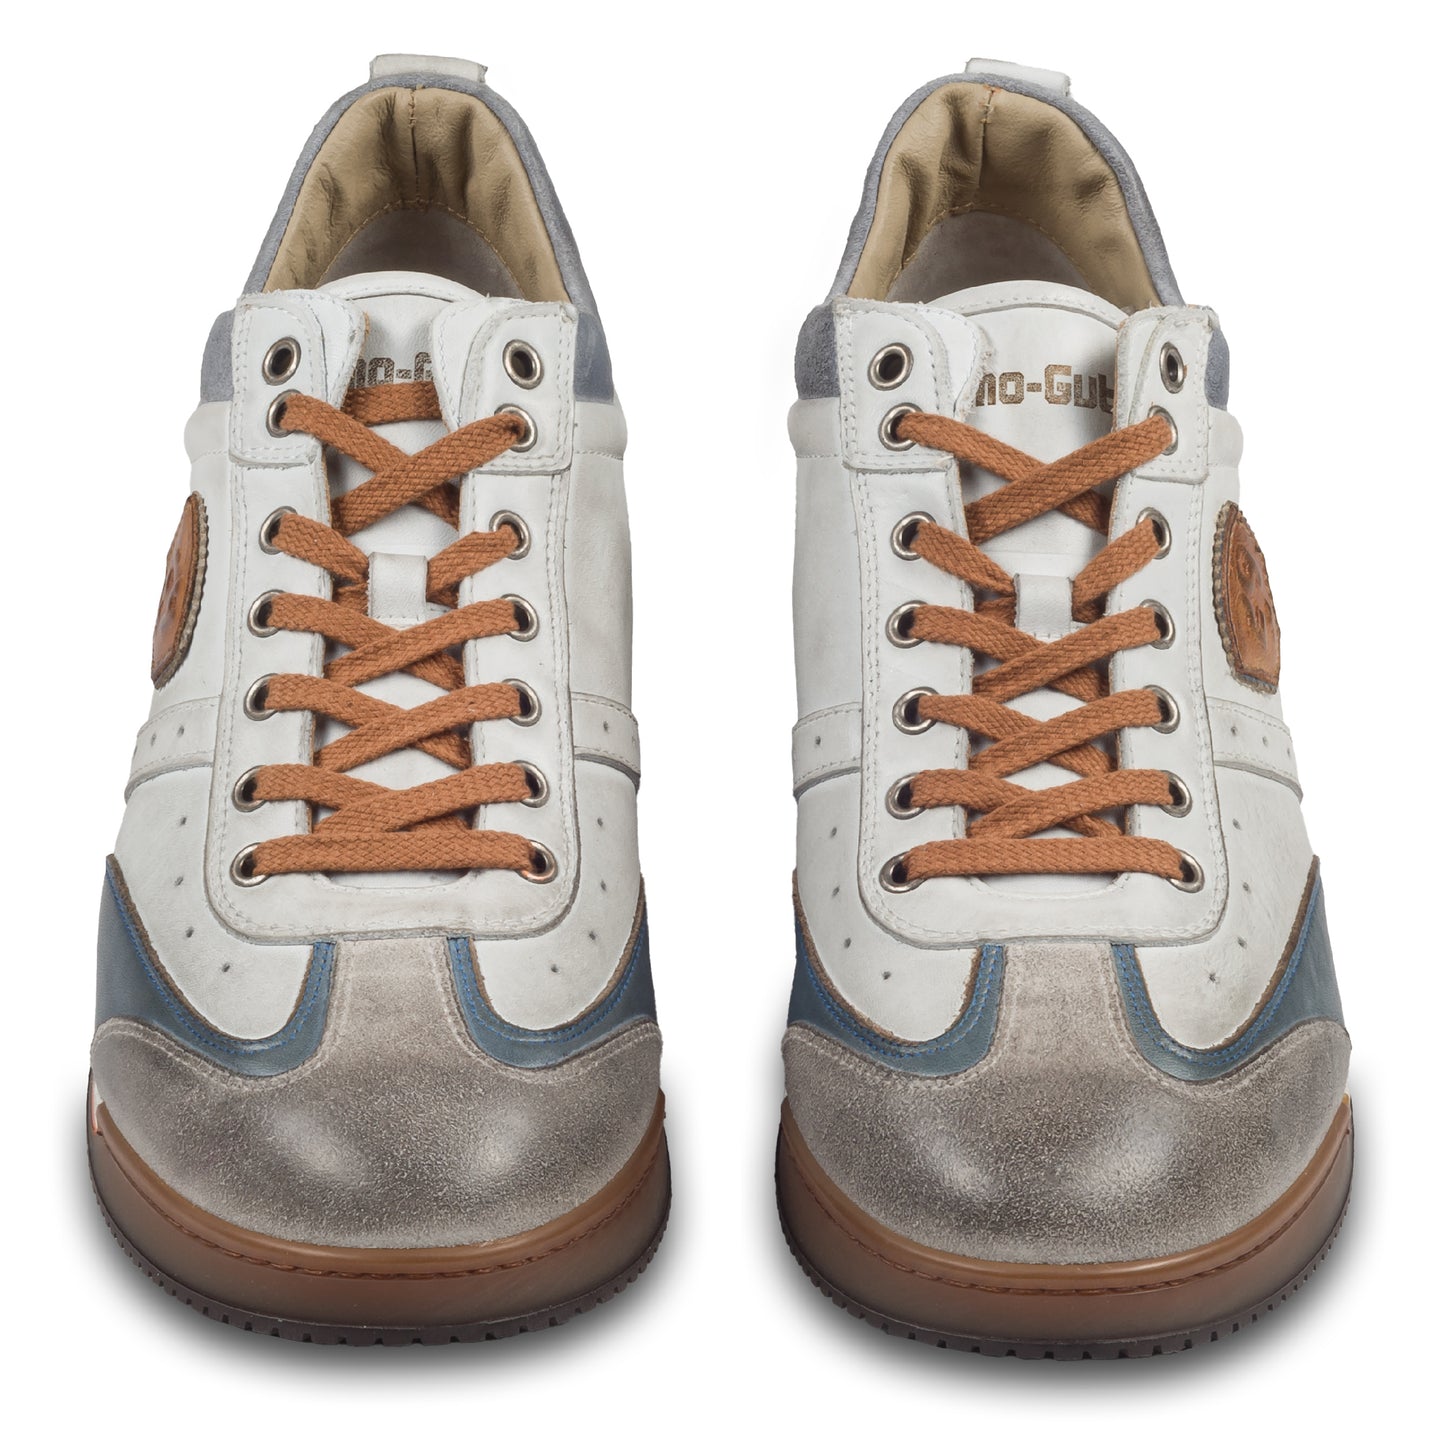 KAMO-GUTSU Herren Leder Sneaker weiß / grau / blau, Retro-Optik. Modell SCUDO-005 bianco combi. Handgefertigt in Italien. Paarweise Ansicht von vorne.  